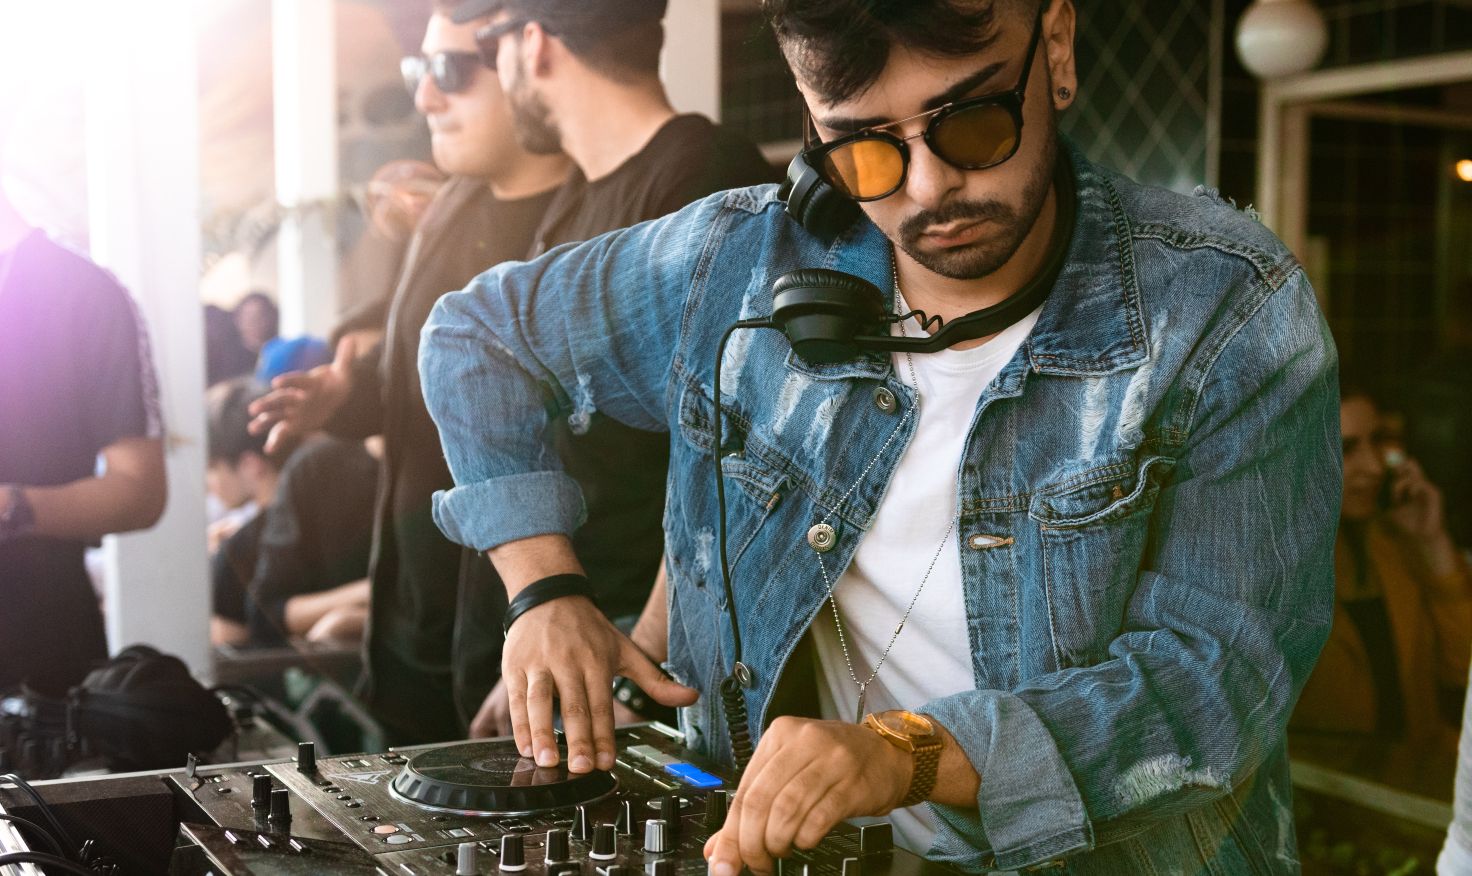 Quelle table de mixage DJ pour débutant ?